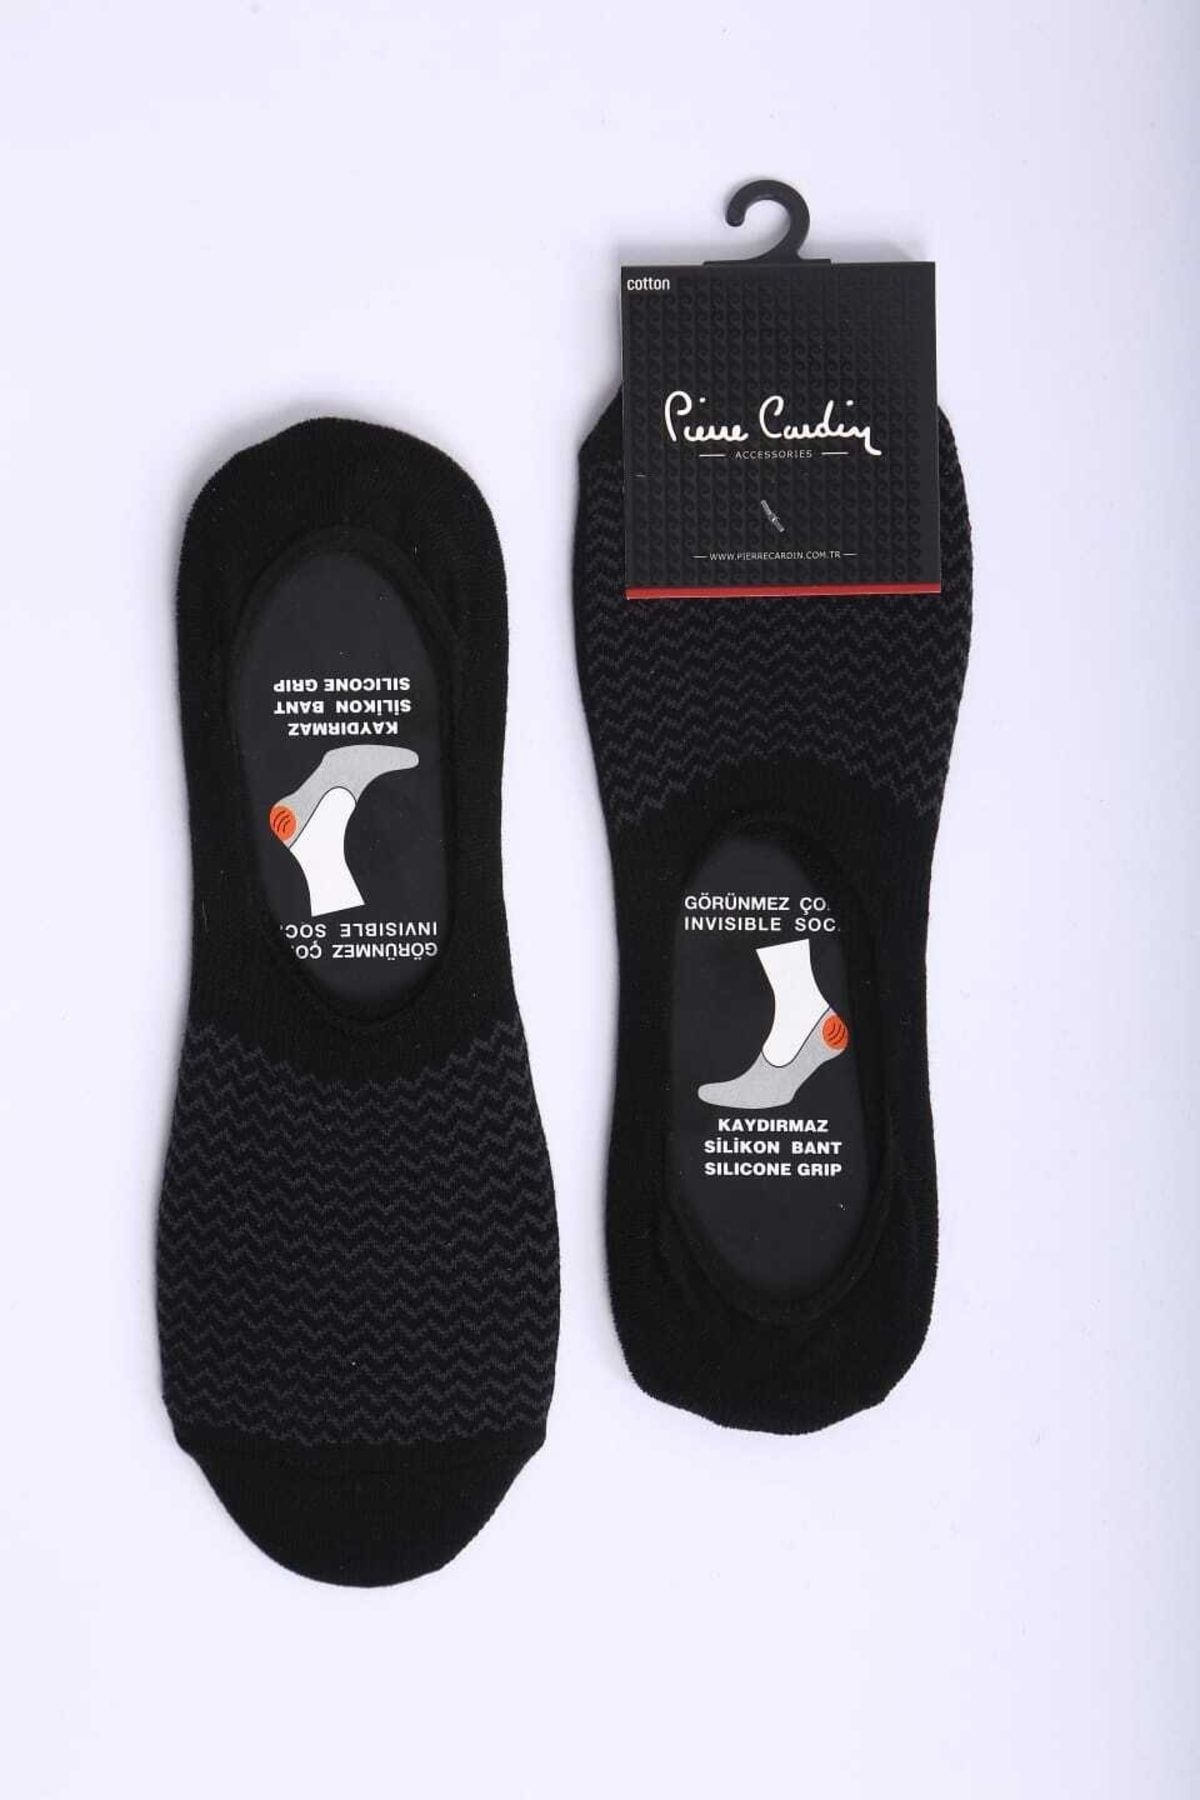 Pierre Cardin Piere Cardin Pamuk 6'lı Siyah Kaymaz Slikon Bantlı Uisex Babet Çorap Pc-403